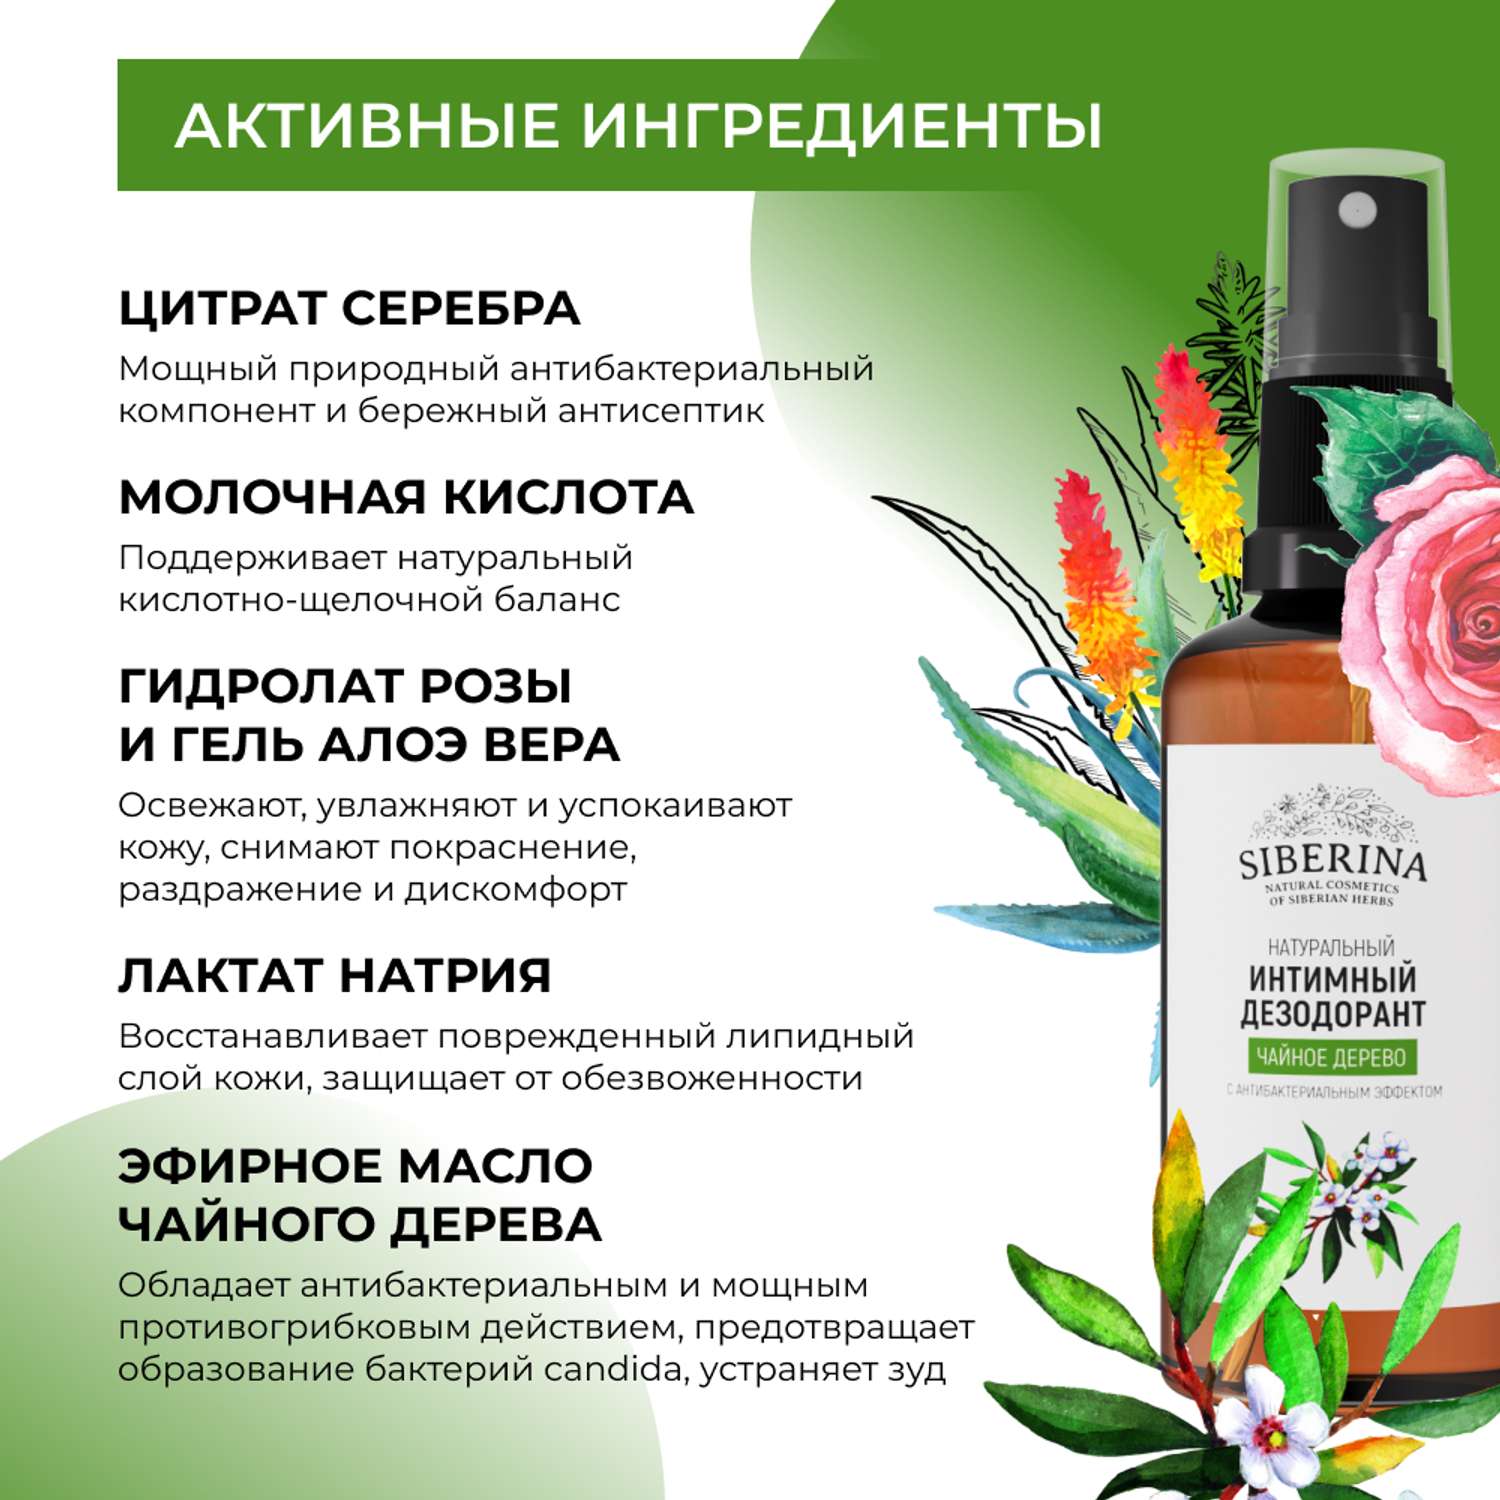 Интимный дезодорант Siberina натуральный «Чайное дерево» антибактериальный без парабенов 50 мл - фото 4